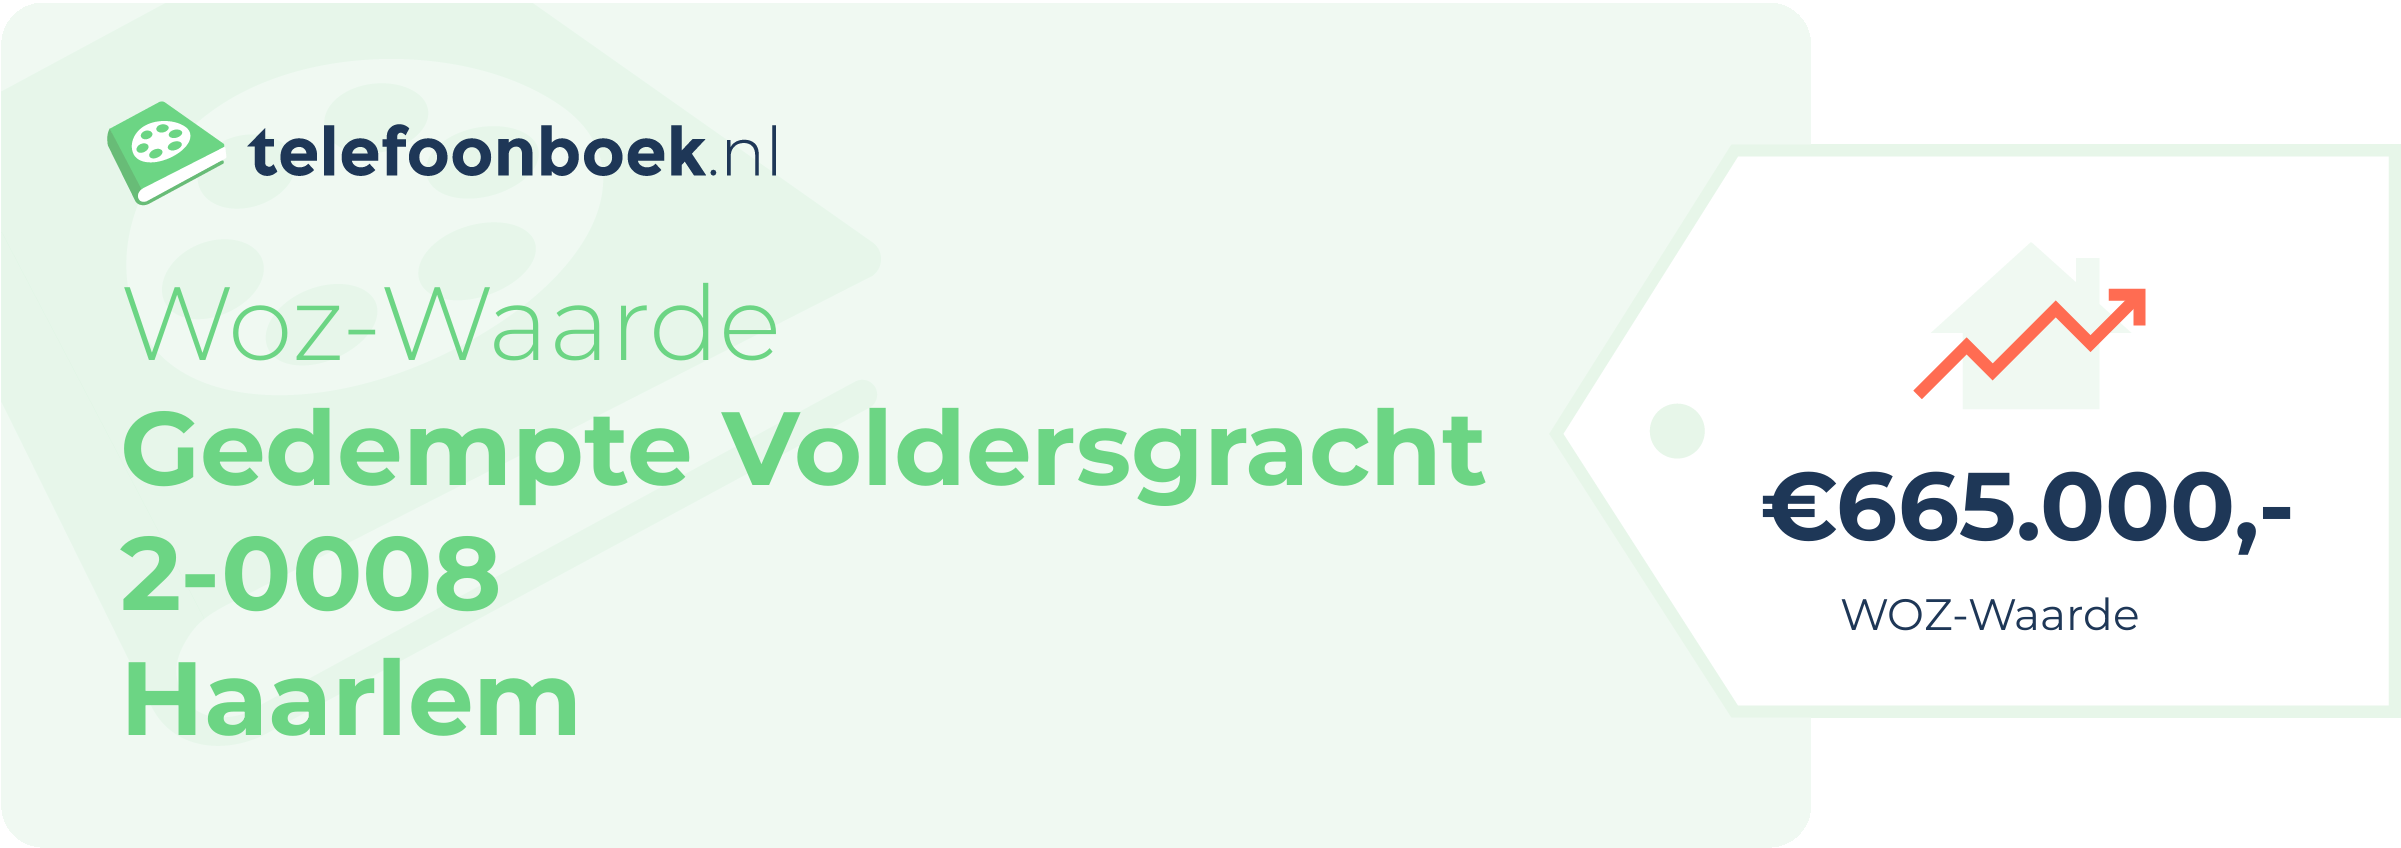 WOZ-waarde Gedempte Voldersgracht 2-0008 Haarlem